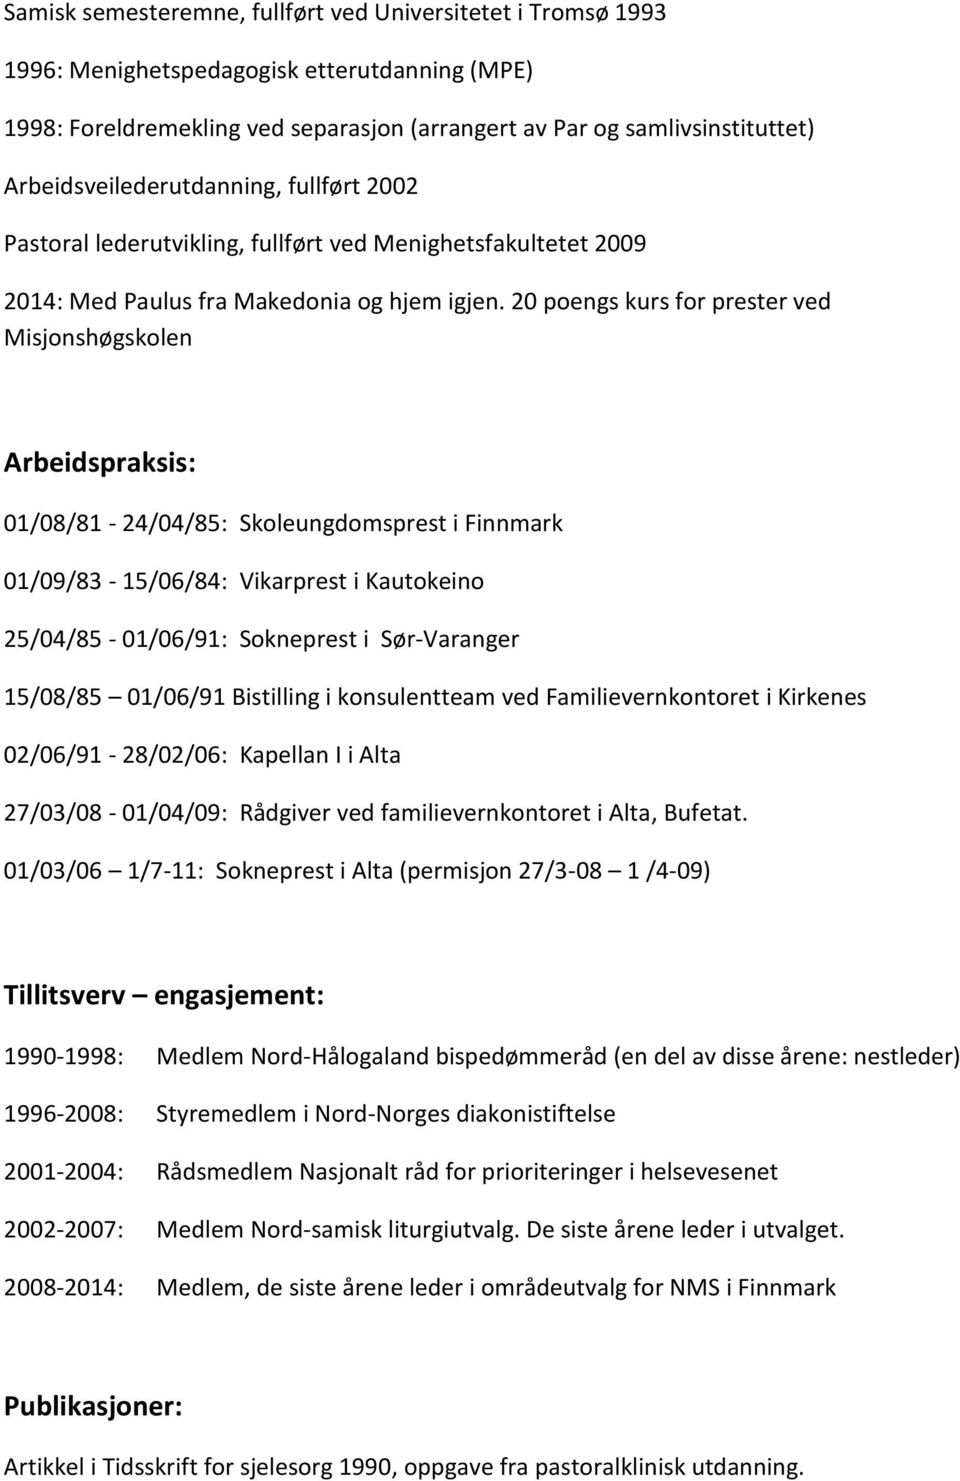 20 poengs kurs for prester ved Misjonshøgskolen Arbeidspraksis: 01/08/81-24/04/85: Skoleungdomsprest i Finnmark 01/09/83-15/06/84: Vikarprest i Kautokeino 25/04/85-01/06/91: Sokneprest i Sør-Varanger